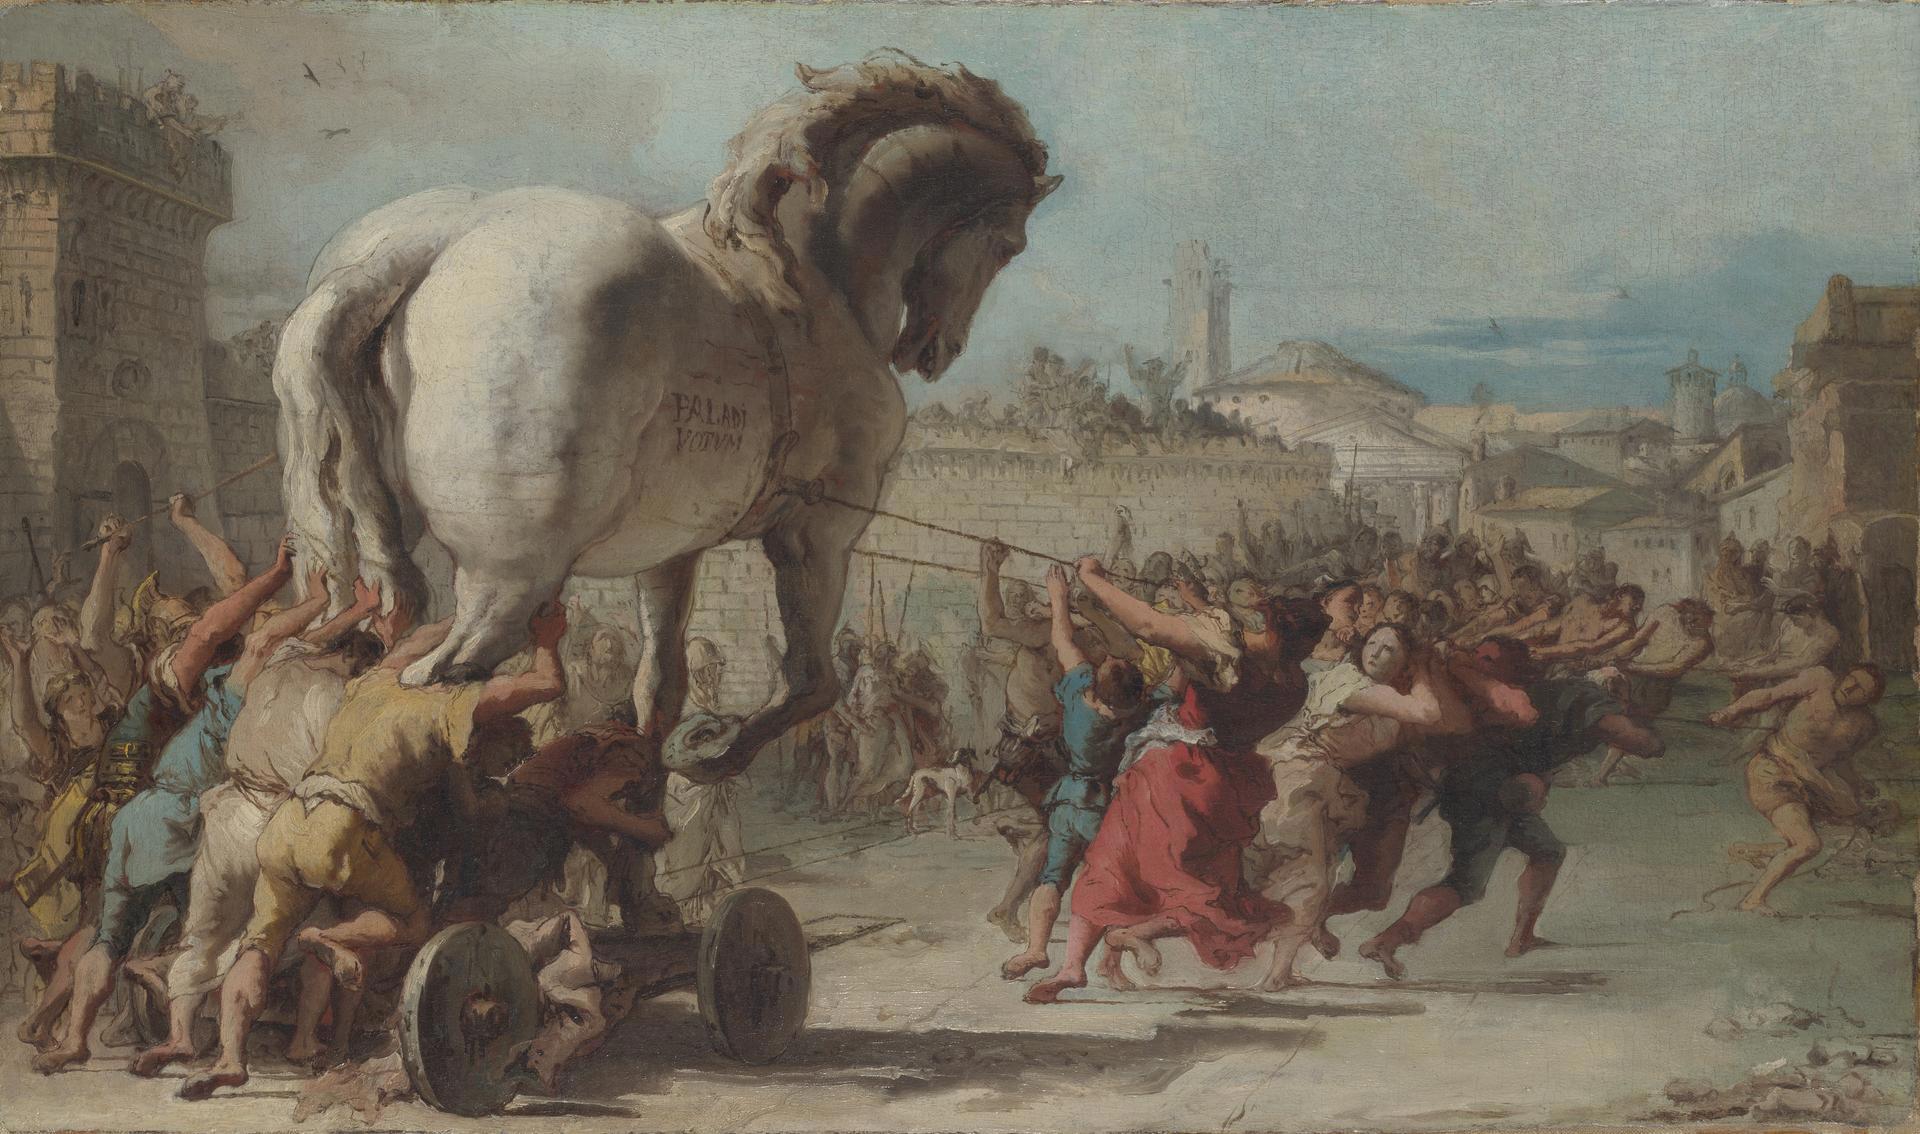 trojan horse drawing